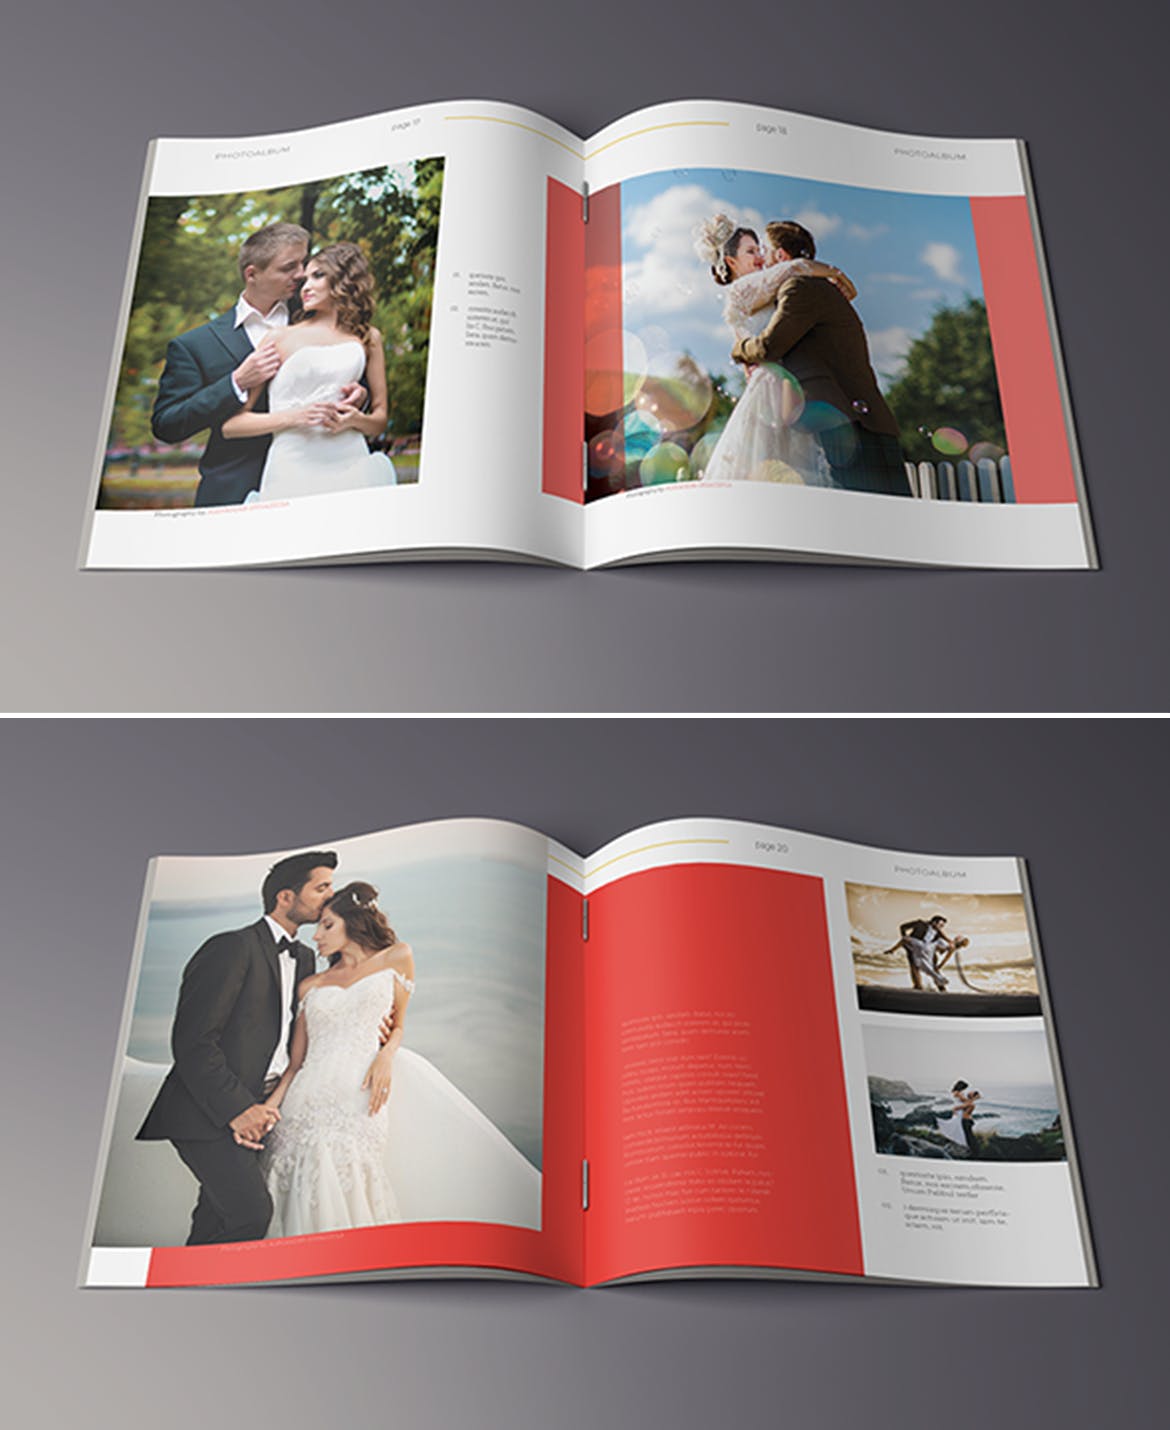 高端摄影作品集画册设计模板 Photography Album插图(6)